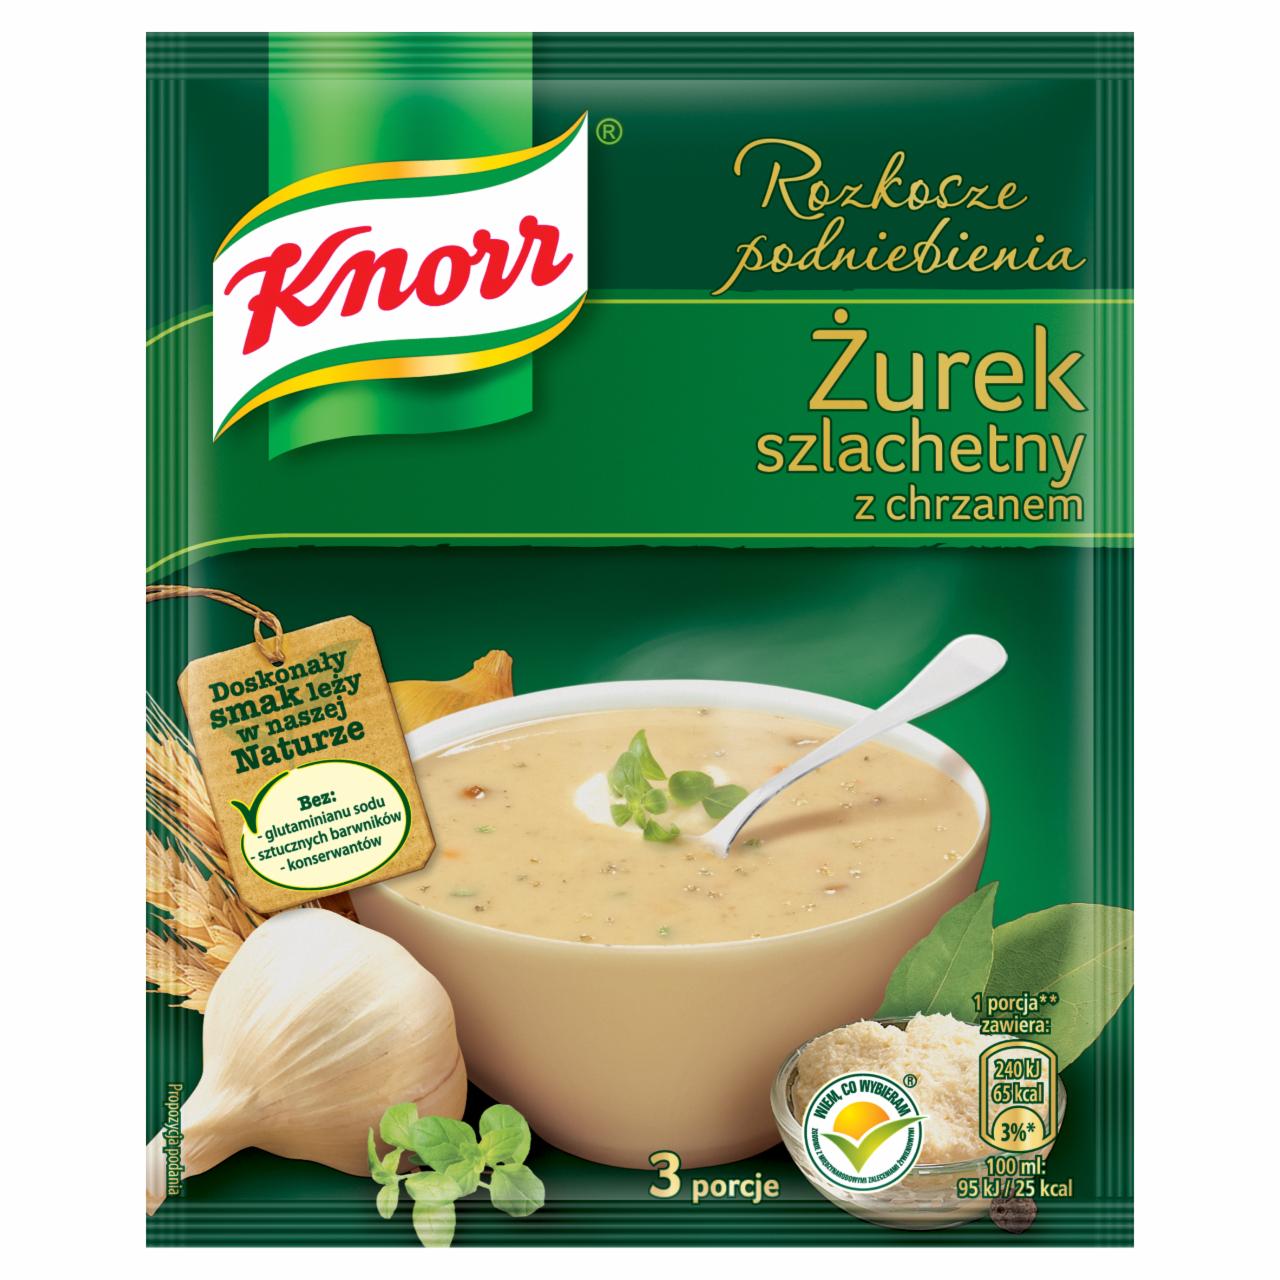 Zdjęcia - Knorr Rozkosze podniebienia Żurek szlachetny z chrzanem 49 g